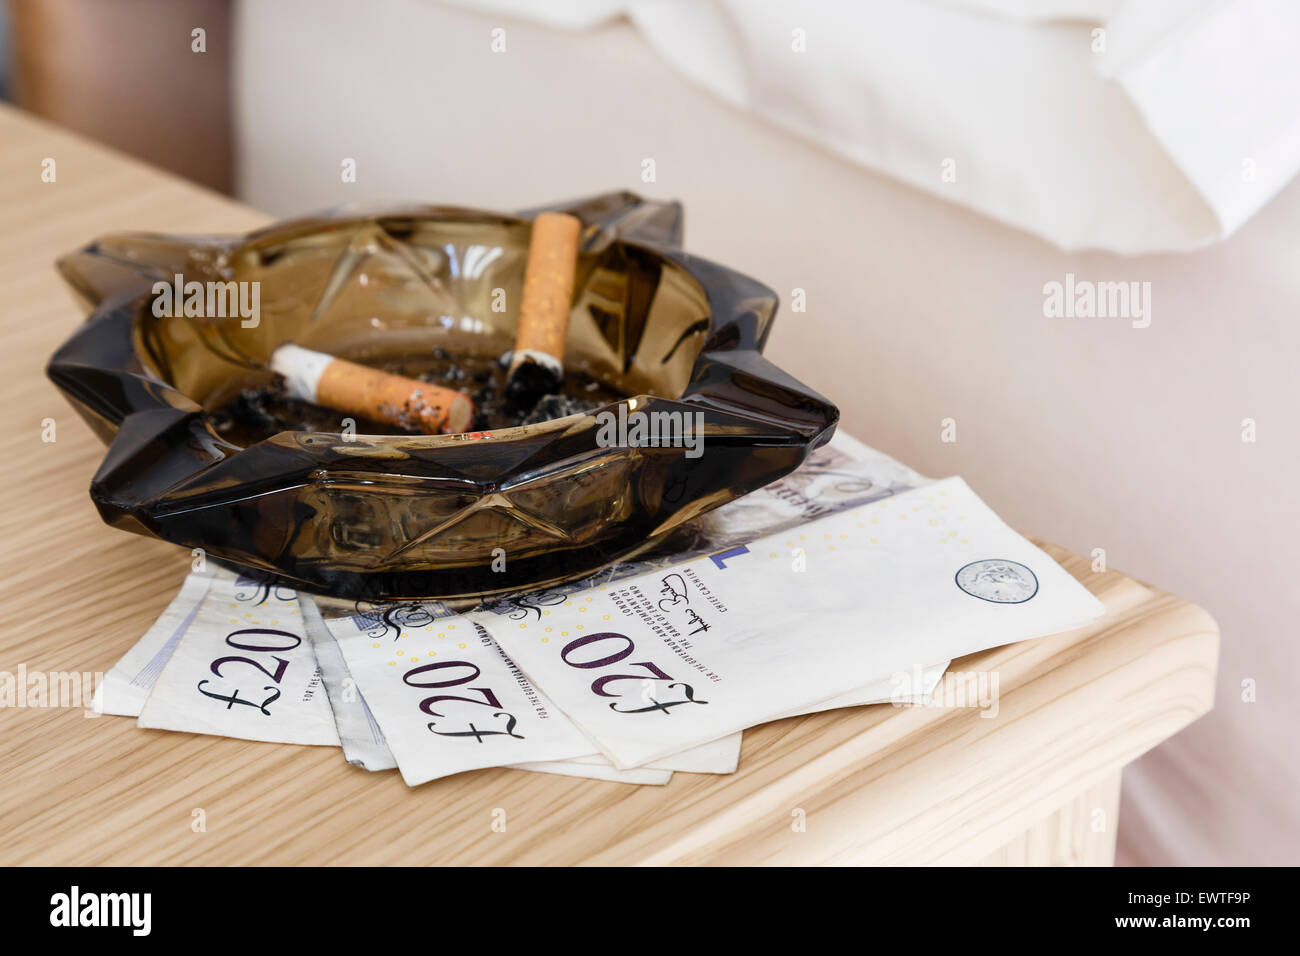 60 £ Hinweise unter einen Aschenbecher mit Zigarettenkippen auf den Nachttisch an der Seite von einer Prostituierten Bett prostitution Konzept zu veranschaulichen. Großbritannien Stockfoto